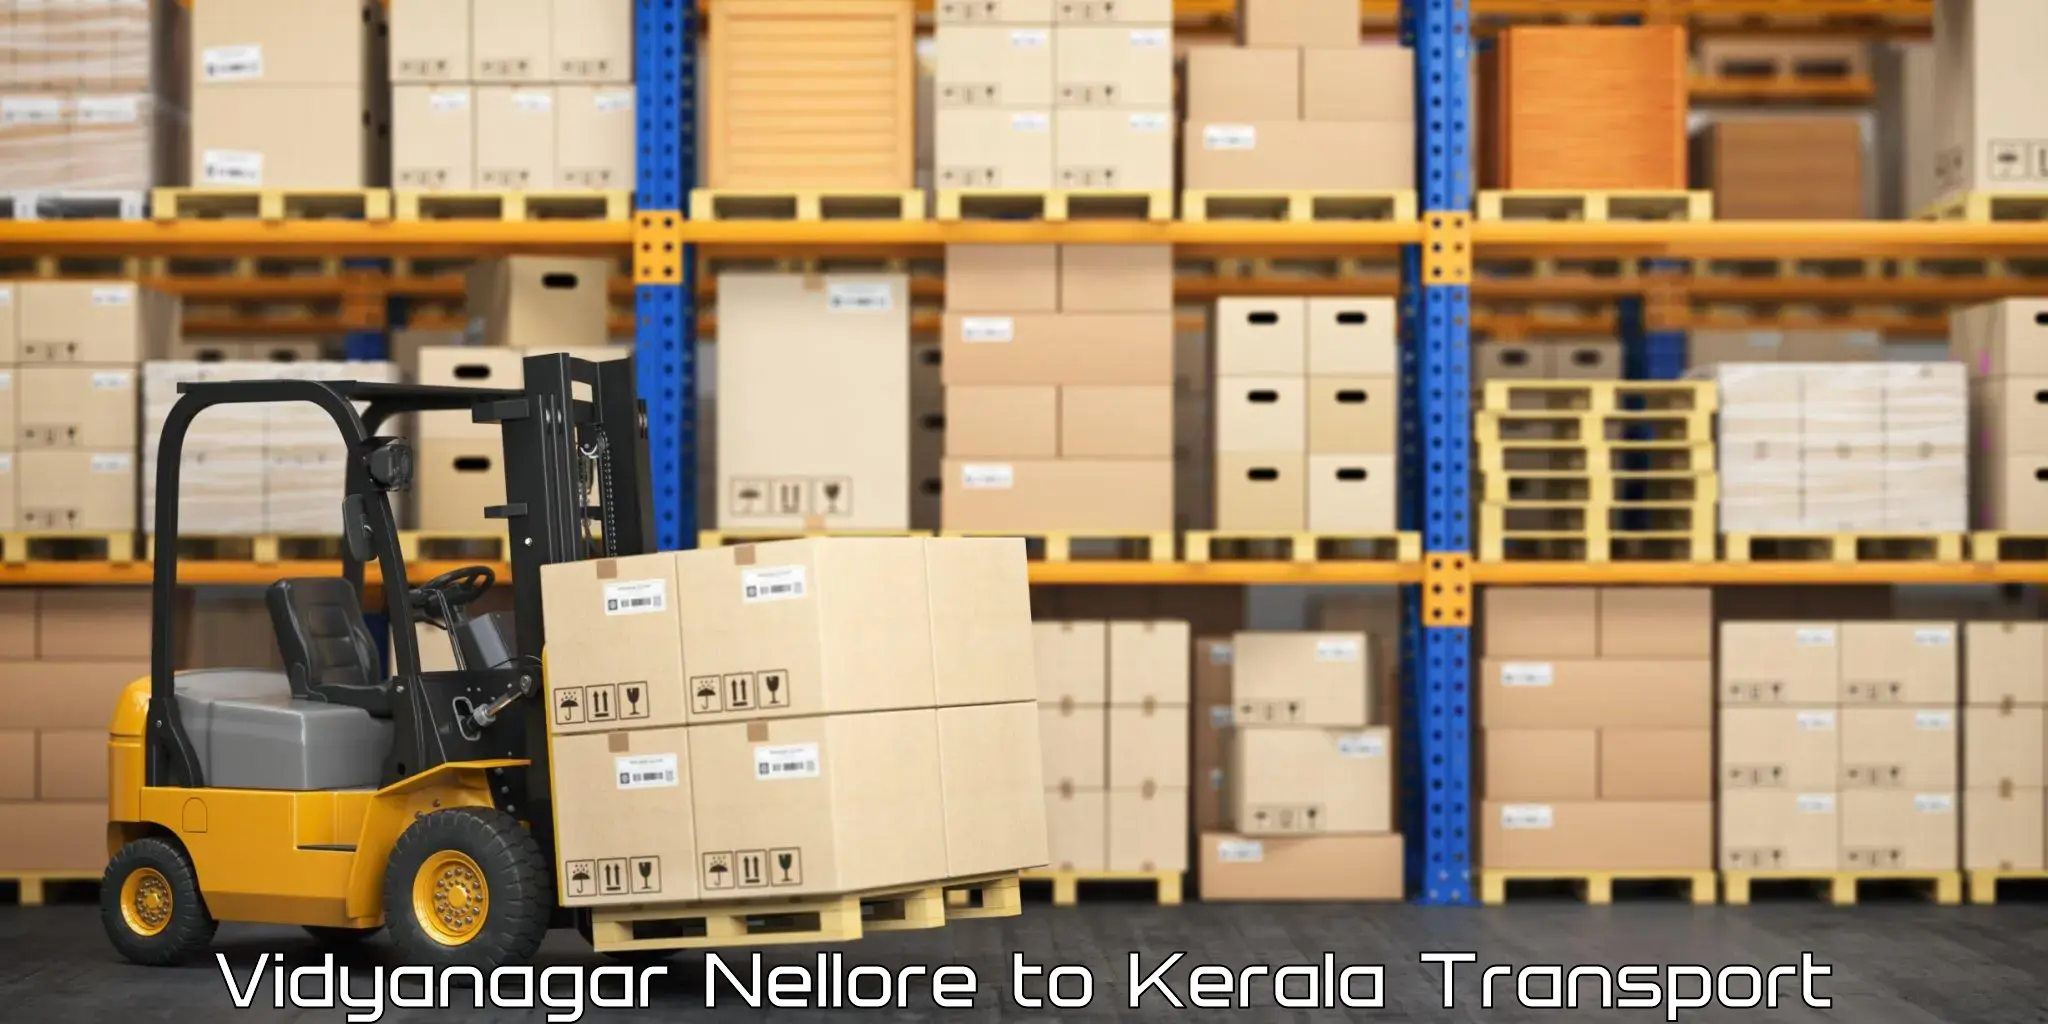 Online transport booking Vidyanagar Nellore to Kuttikol